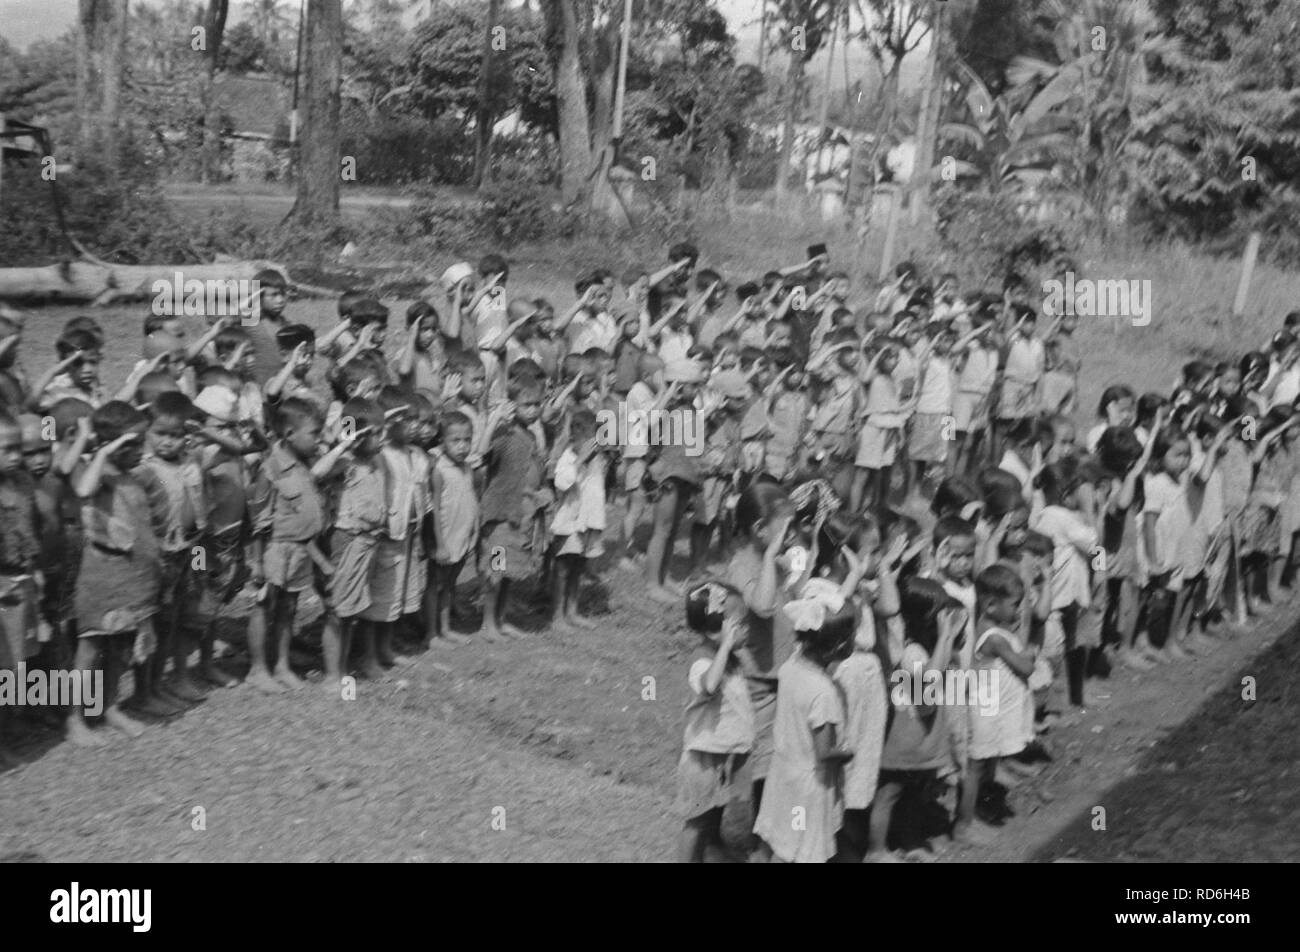 Ambarawa Op 20 settembre werd de Hollands-Indische scuola geopend feestelijk., Bestanddeelnr 373-2-2. Foto Stock